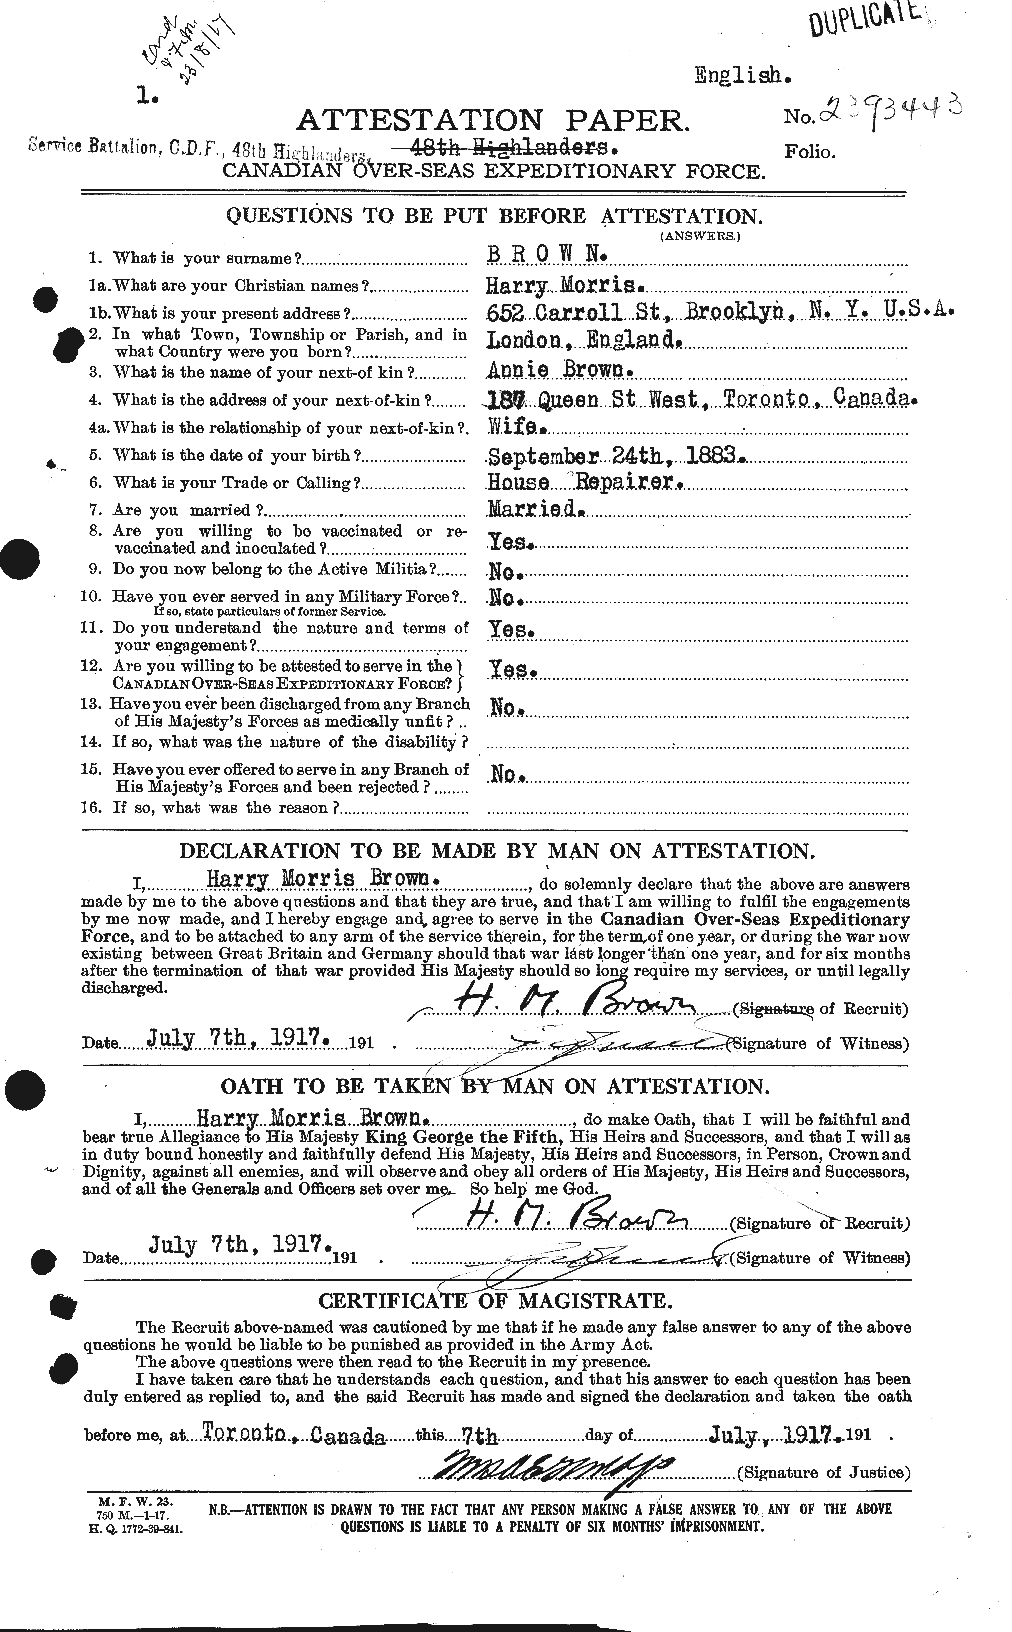 Dossiers du Personnel de la Première Guerre mondiale - CEC 265462a